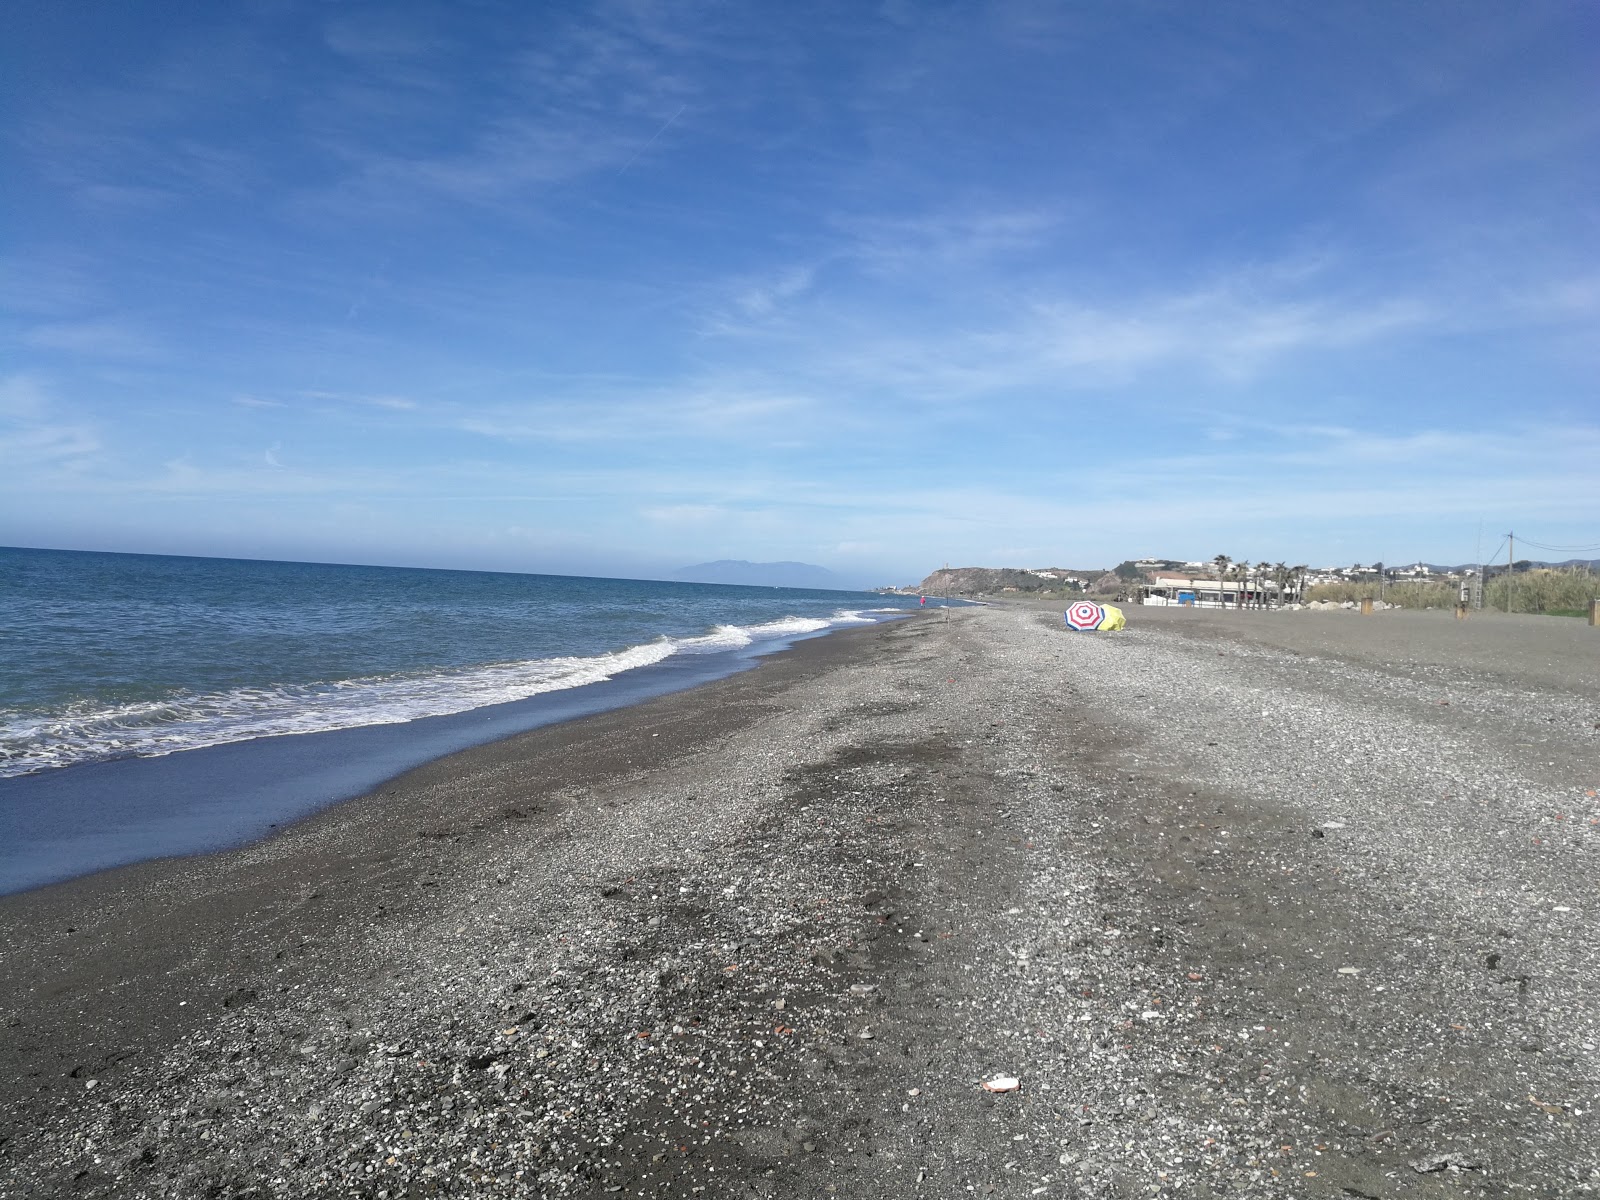 Playa Almayate'in fotoğrafı gri kum yüzey ile